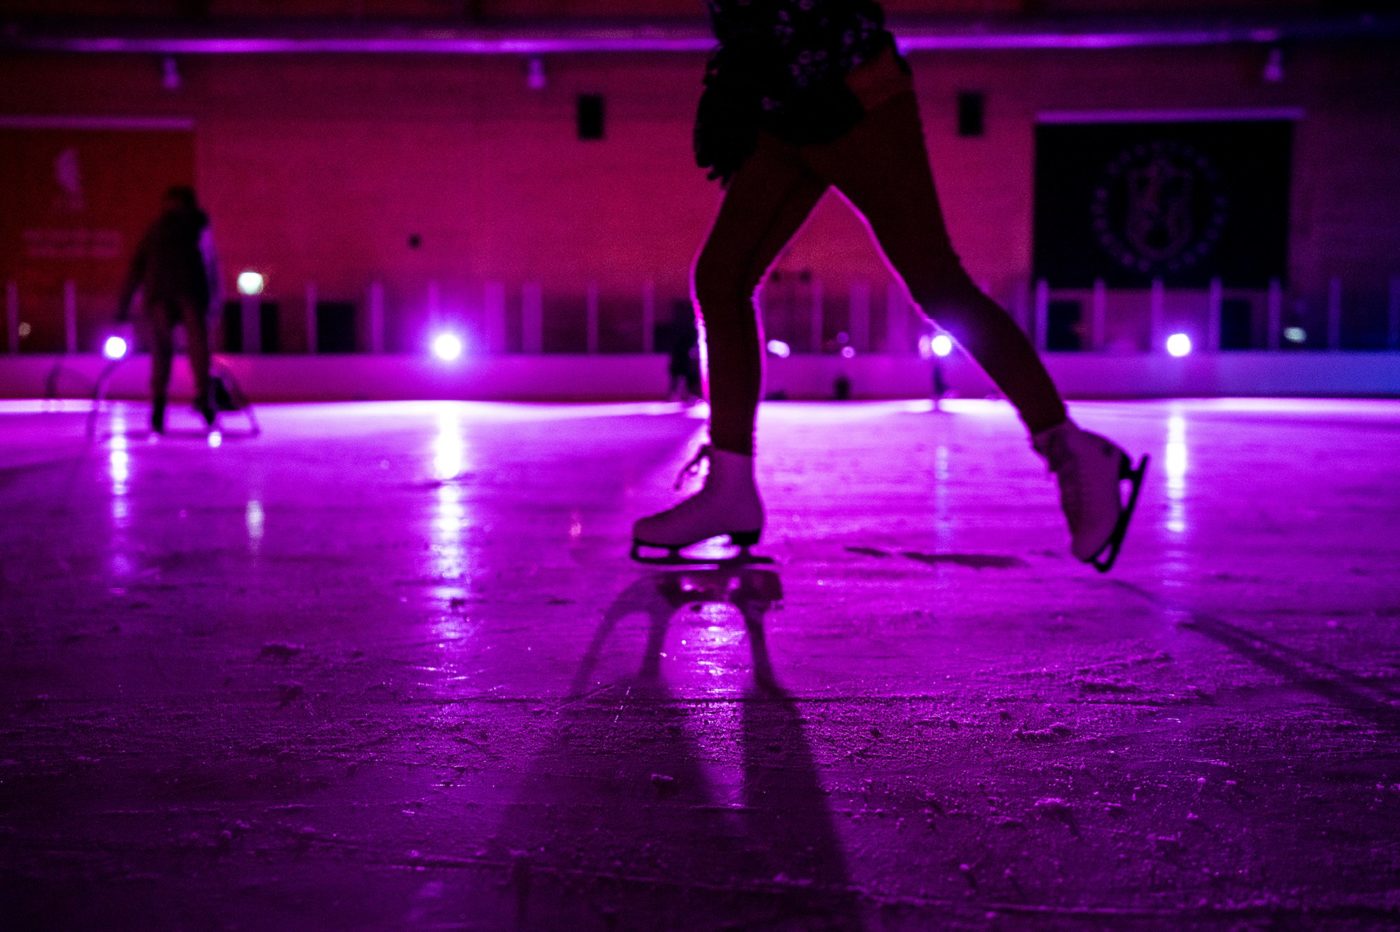 Is som är upplyst med lila discoljus. På isen ser man siluetter av två karaktärer som åker skridskor. 